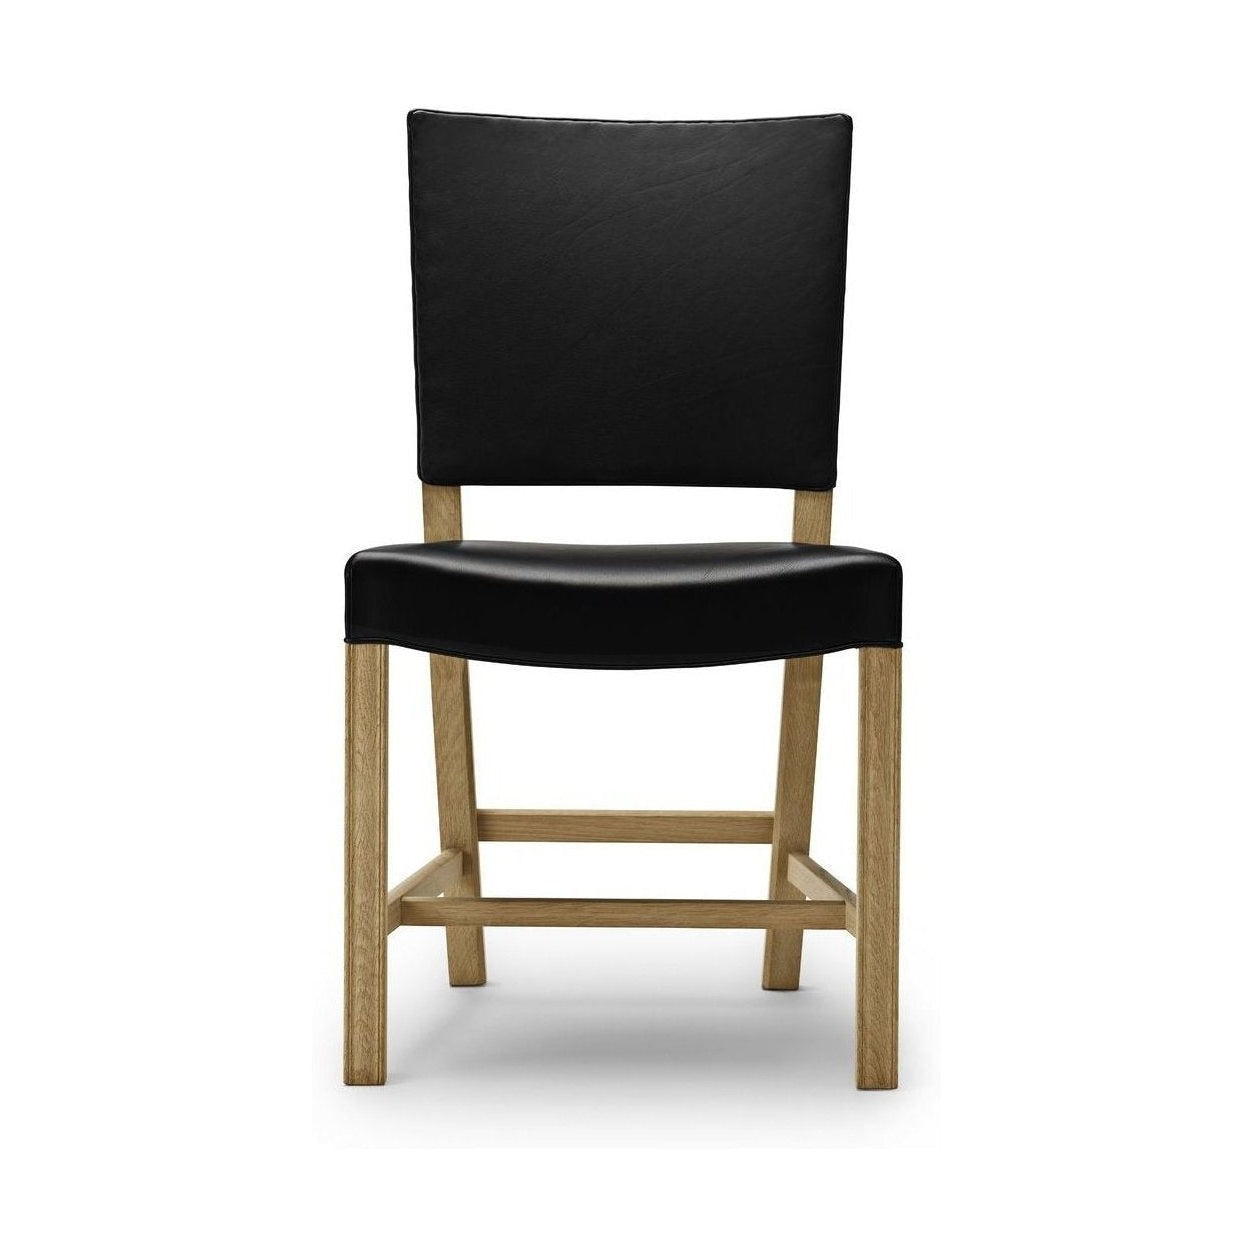 Carl Hansen KK37580 stor röd stol, tvålad ek/svart läder